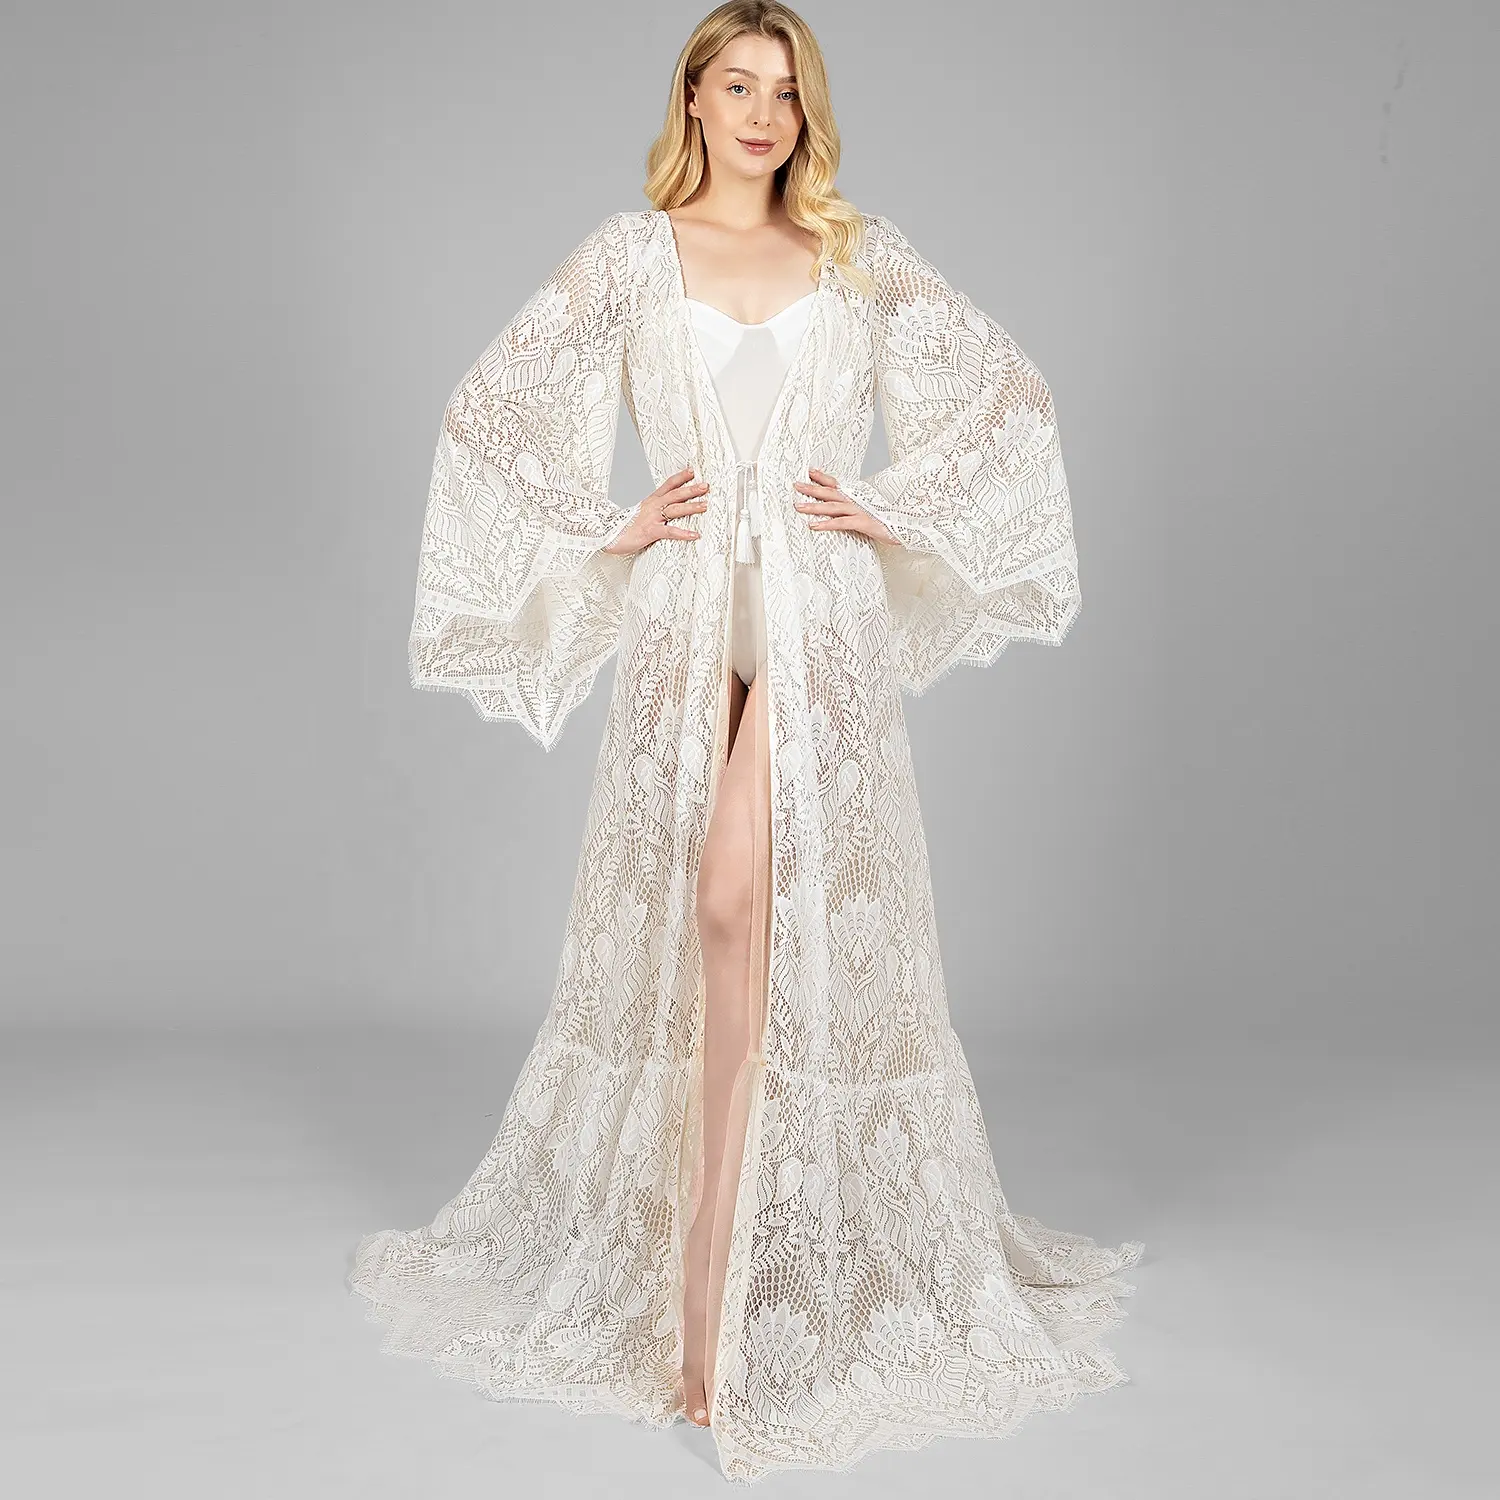 Yanzi Ivory Lace Robe Long for Bride Wedding Luxury Sheer Boudoir Nightgown Sleep Dress Nightwear Women's House Tulle Robe